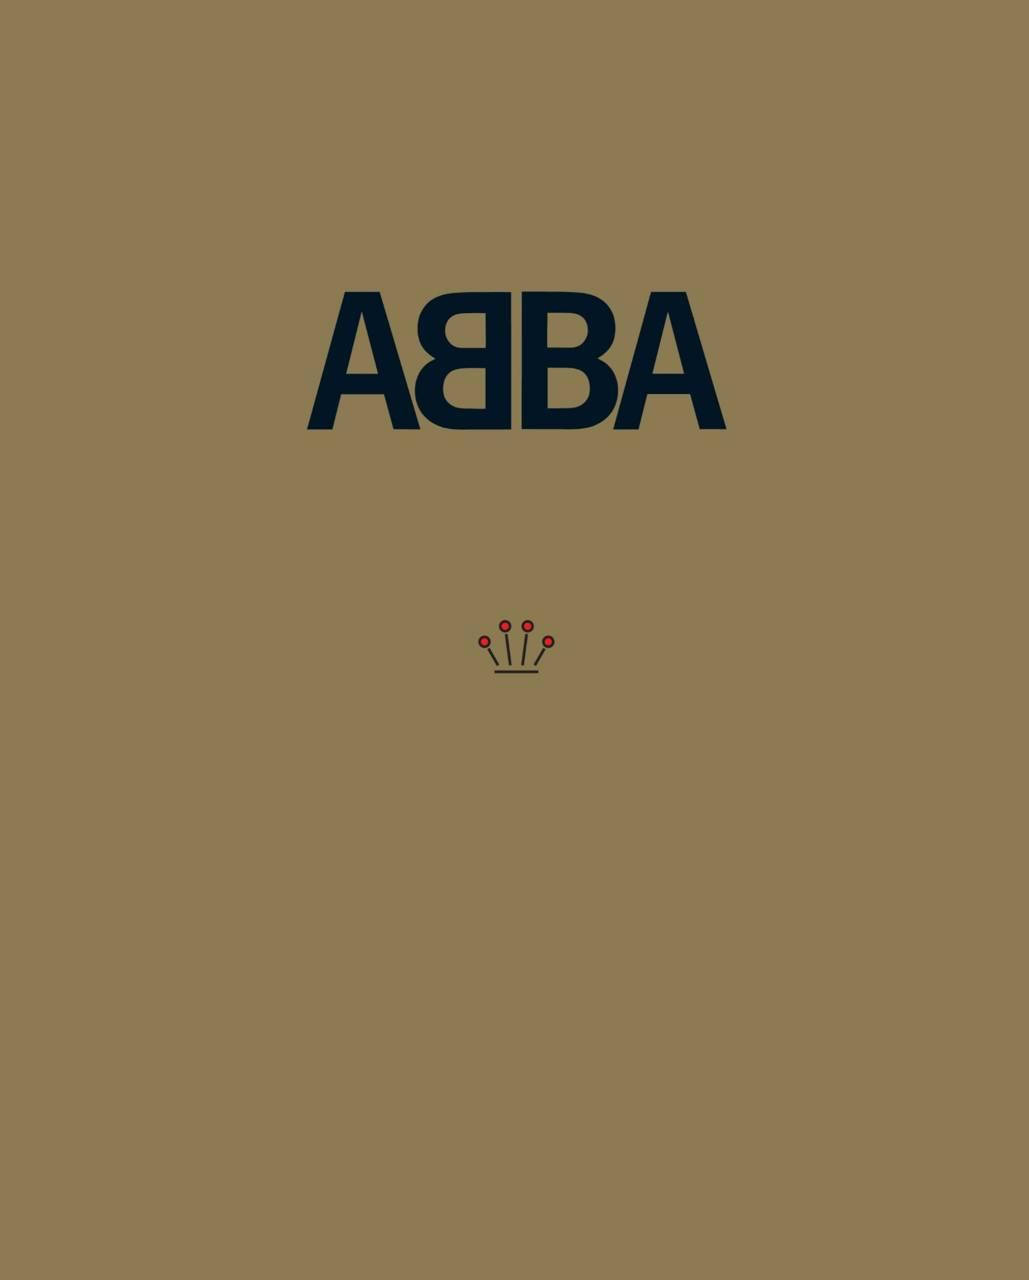 Abba Crown Logo Wallpaper